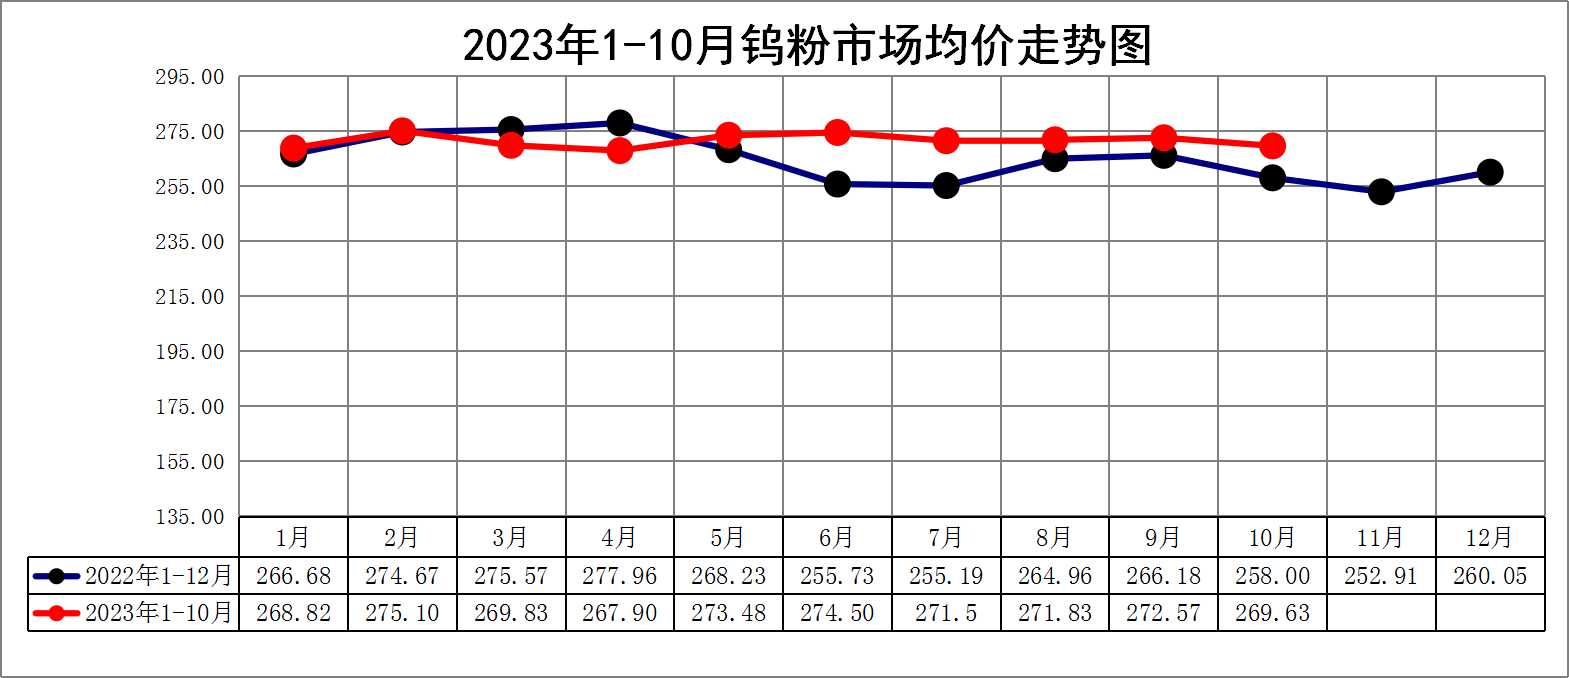 2023年1-10月中颗料钨粉价格走势图.jpg